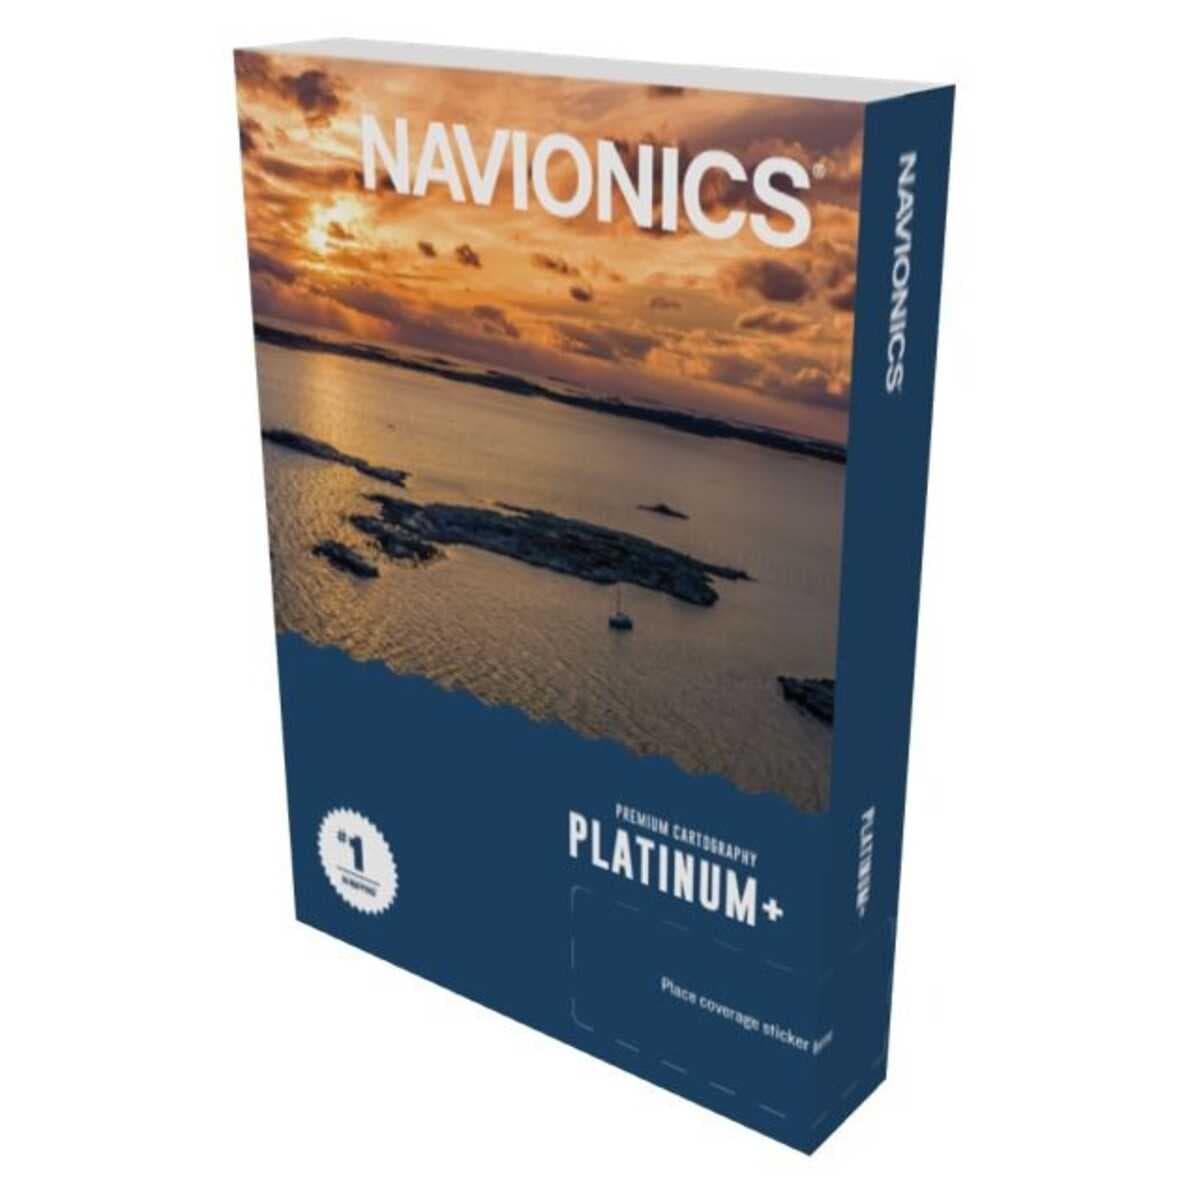 Navionics Plat+ REG:Alpine, lakes/rivers - 16GB